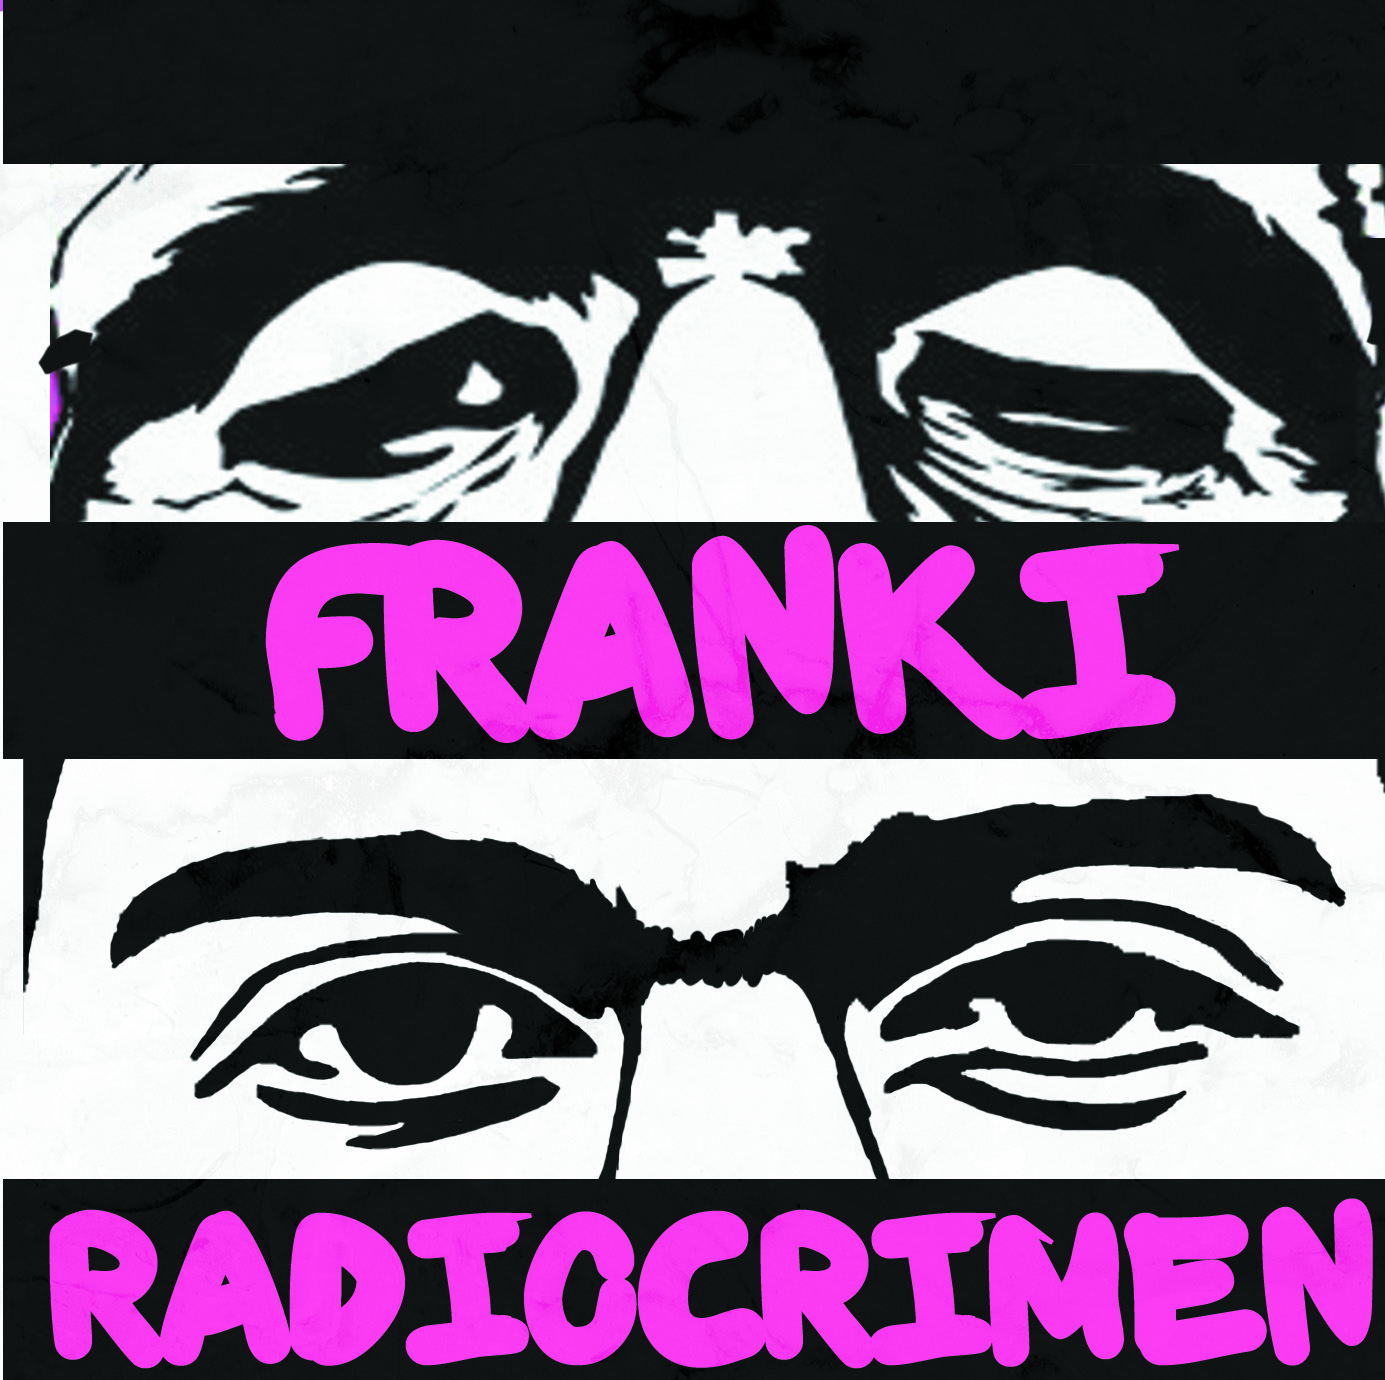 RadioCrimen presentan "Franki", tema de su próximo disco